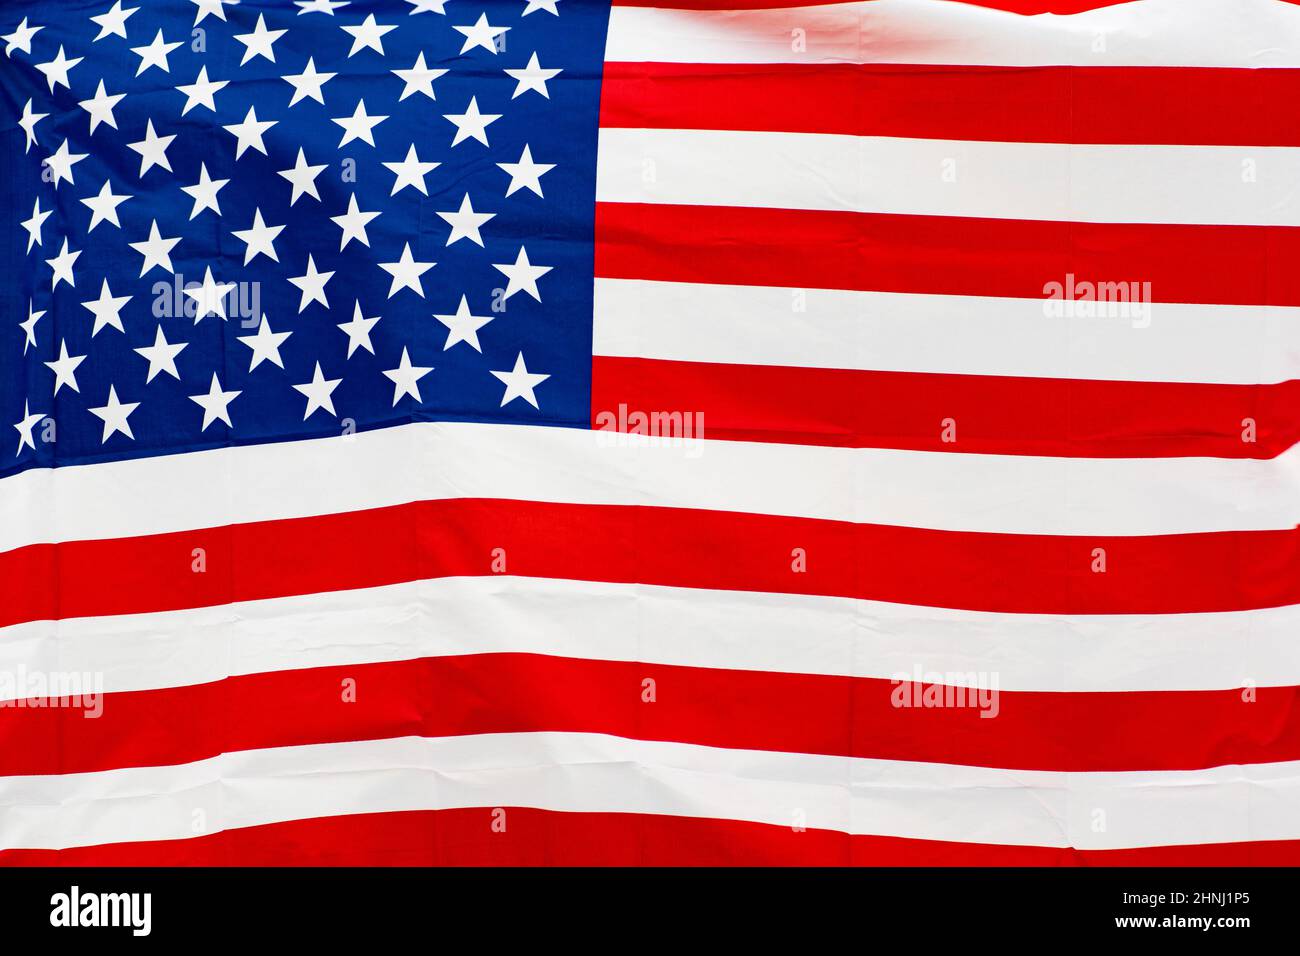 Etats-Unis, Etats-Unis, drapeau américain agitant dans la ville avec des bâtiments gouvernementaux sur fond Banque D'Images